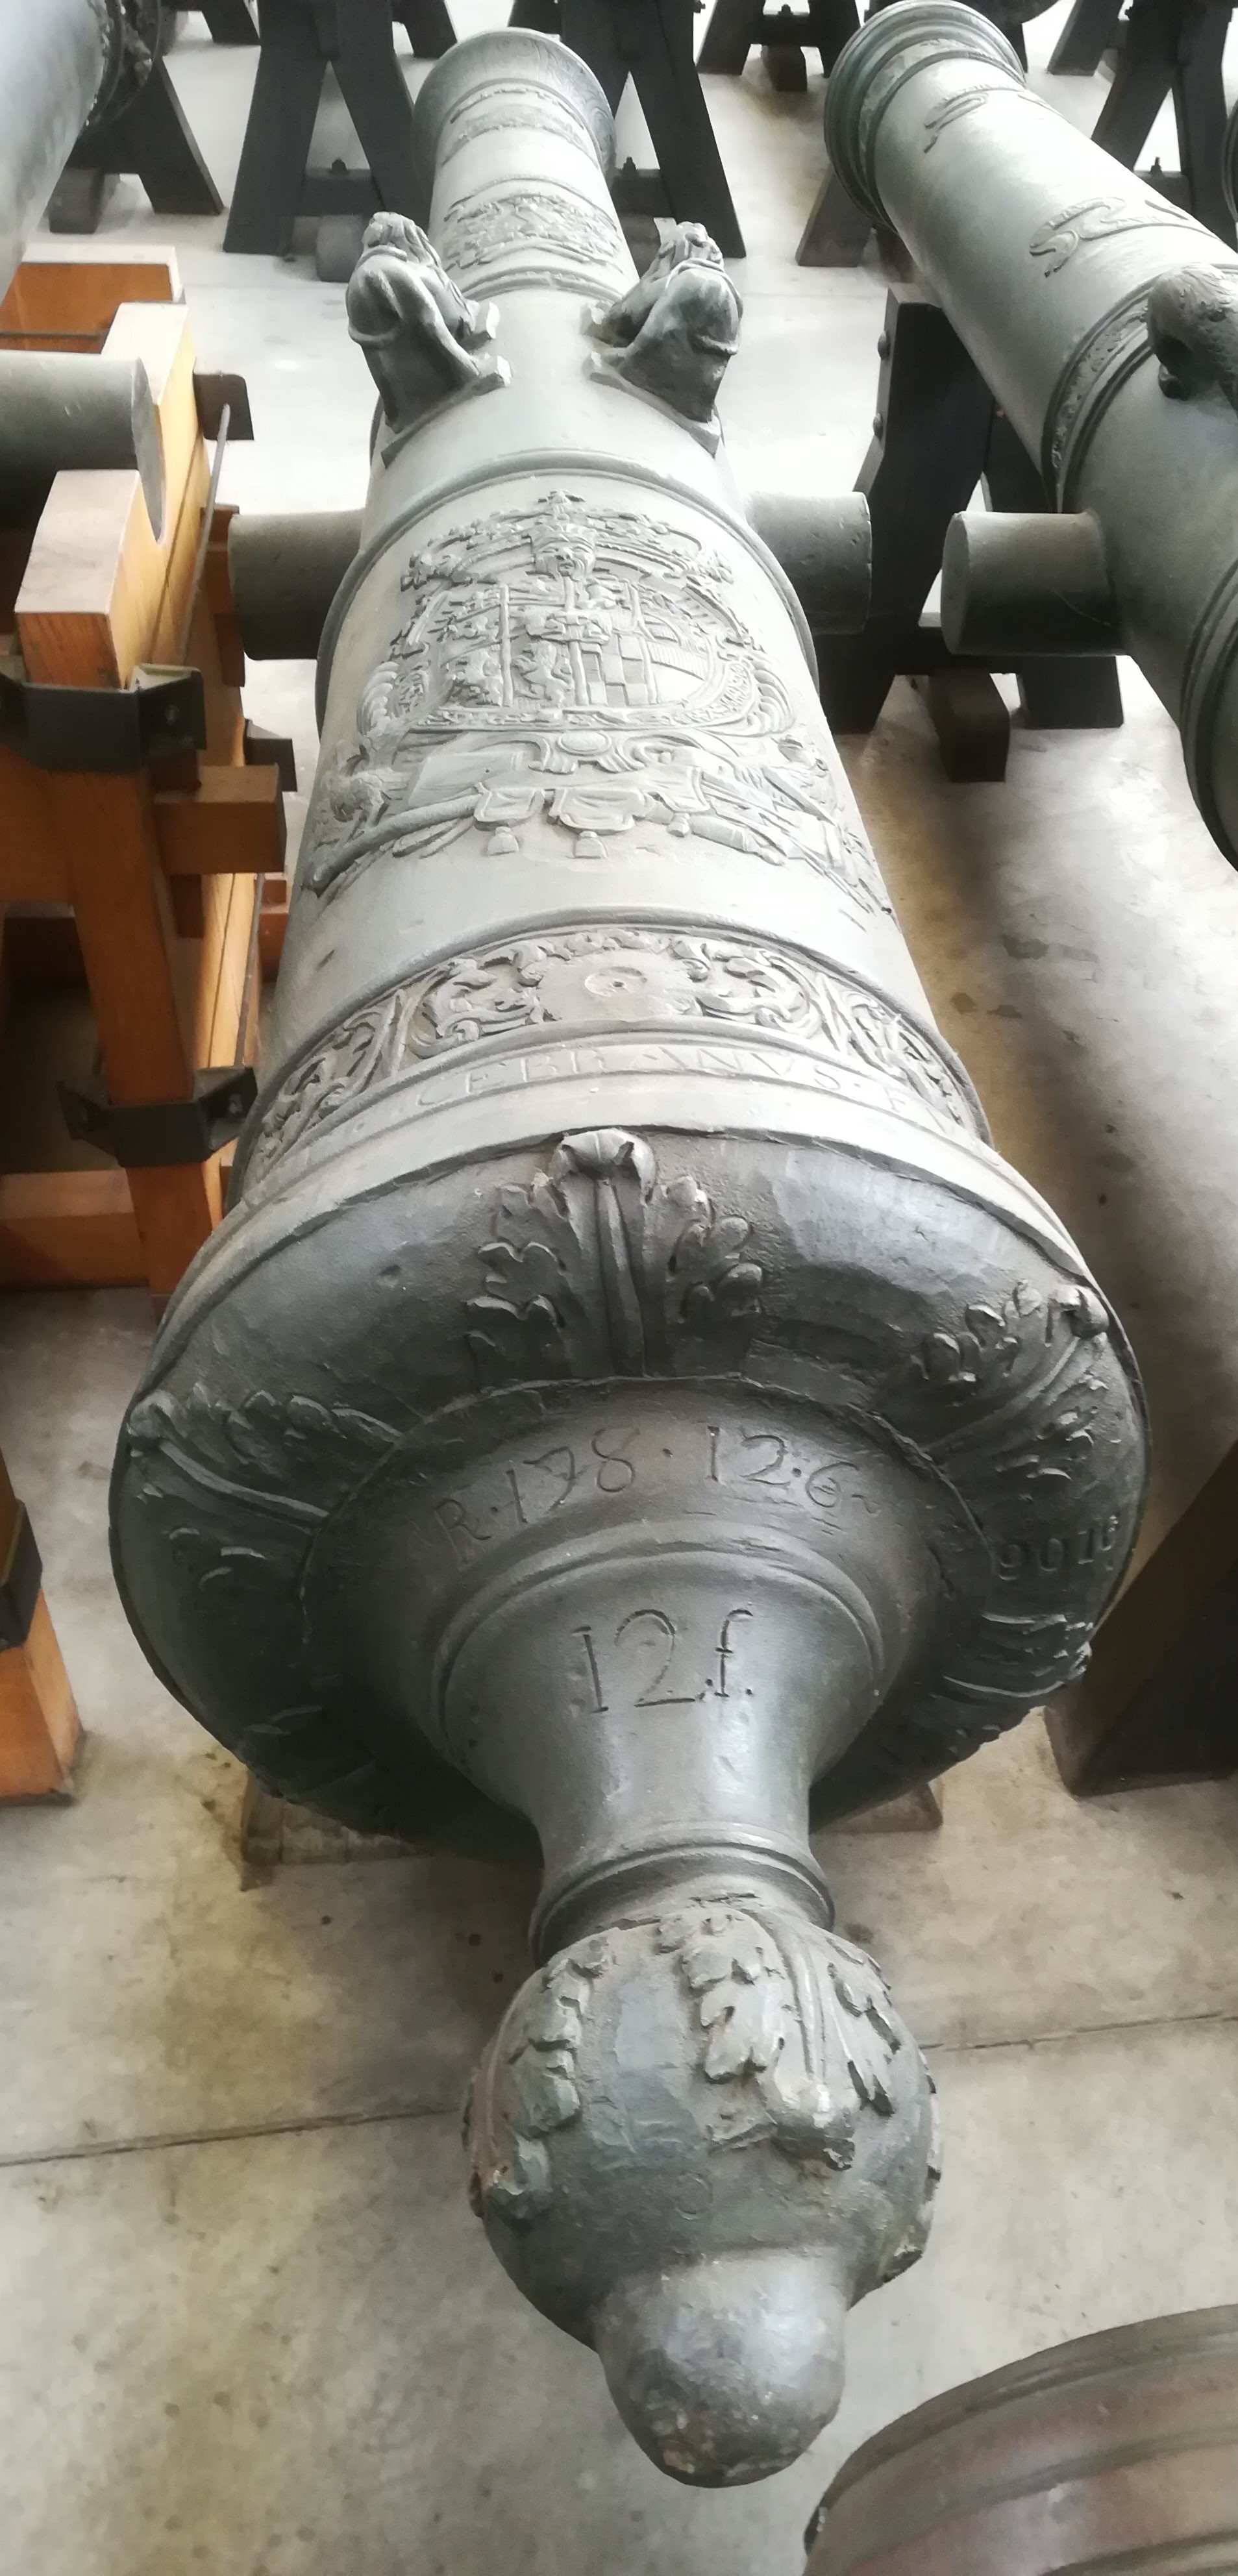 artiglieria storica (Cannone Oliastro Ducato Di Savoia XVIII sec) di Giov. Battista Cebrano (officina) - Ducato di Savoia e Regno delle Due Sicile (XVIII SEC)